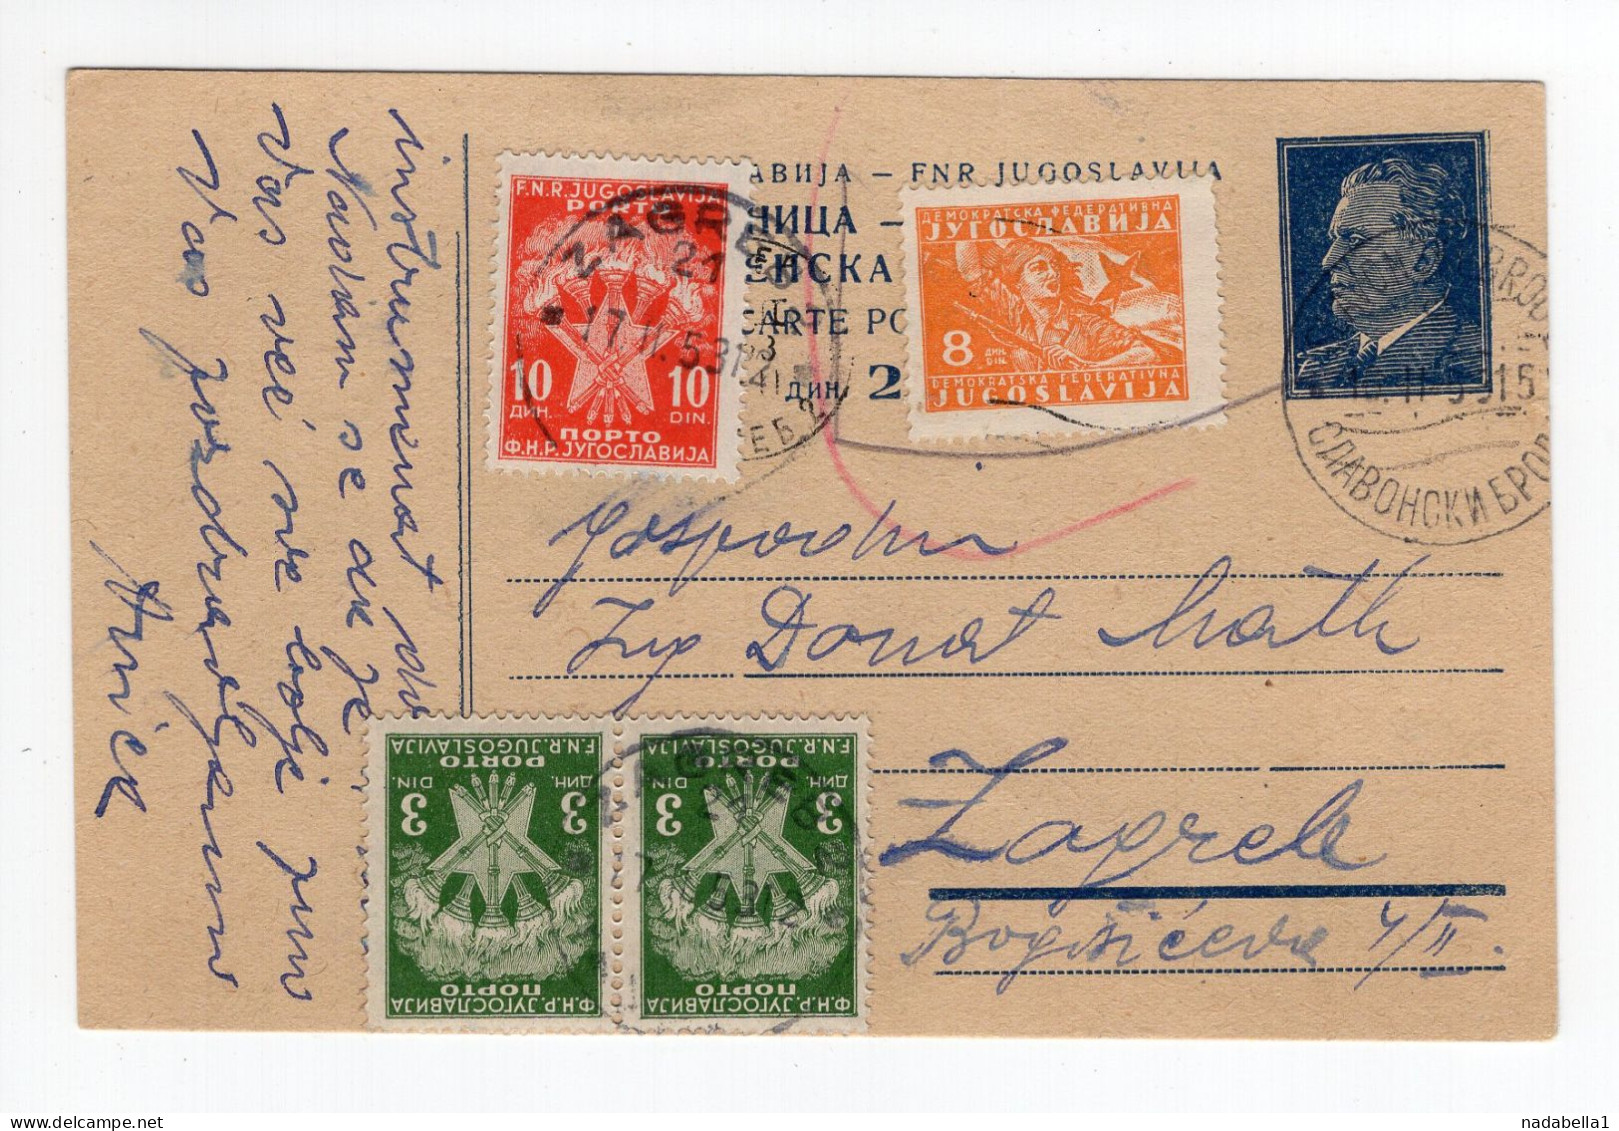 1953. YUGOSLAVIA,CROATIA,SLAVONSKI BROD,STATIONERY CARD,USED,POSTAGE DUE IN ZAGREB - Postage Due